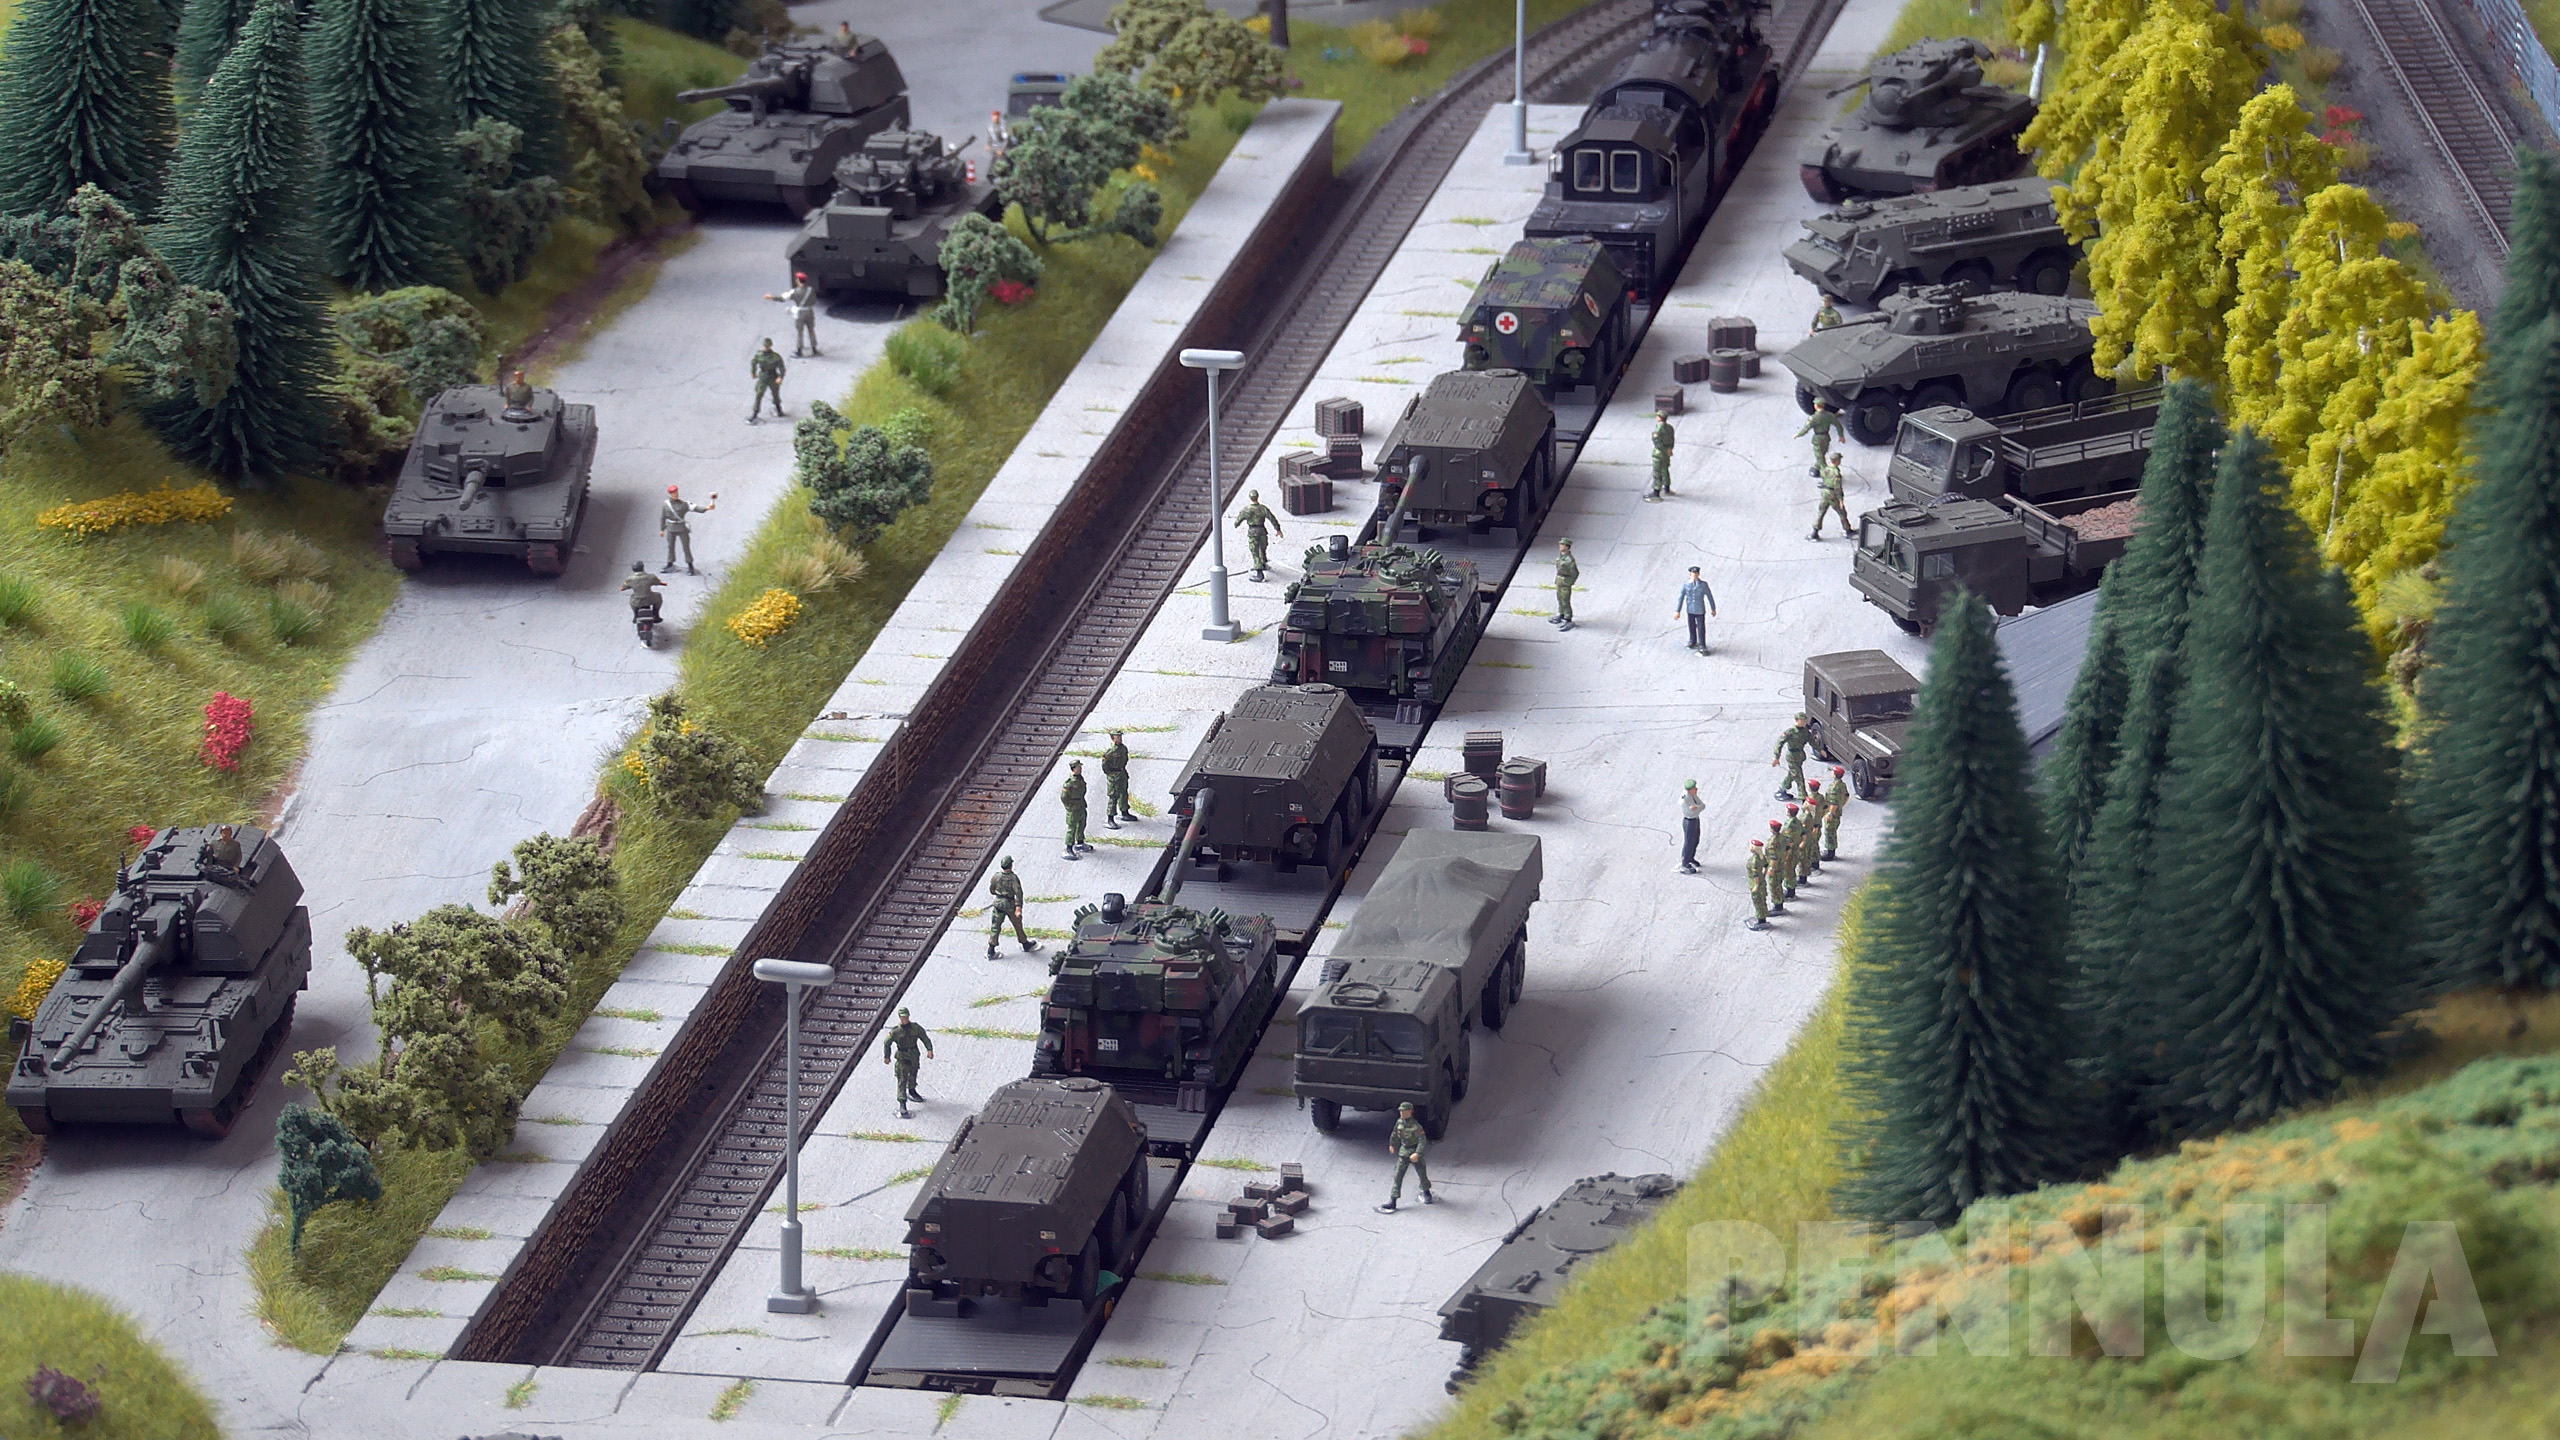 Märklin Modellbahn Militärzug und Panzerzug Bundeswehr mit Dampflok - Militärmodellbau Spur H0